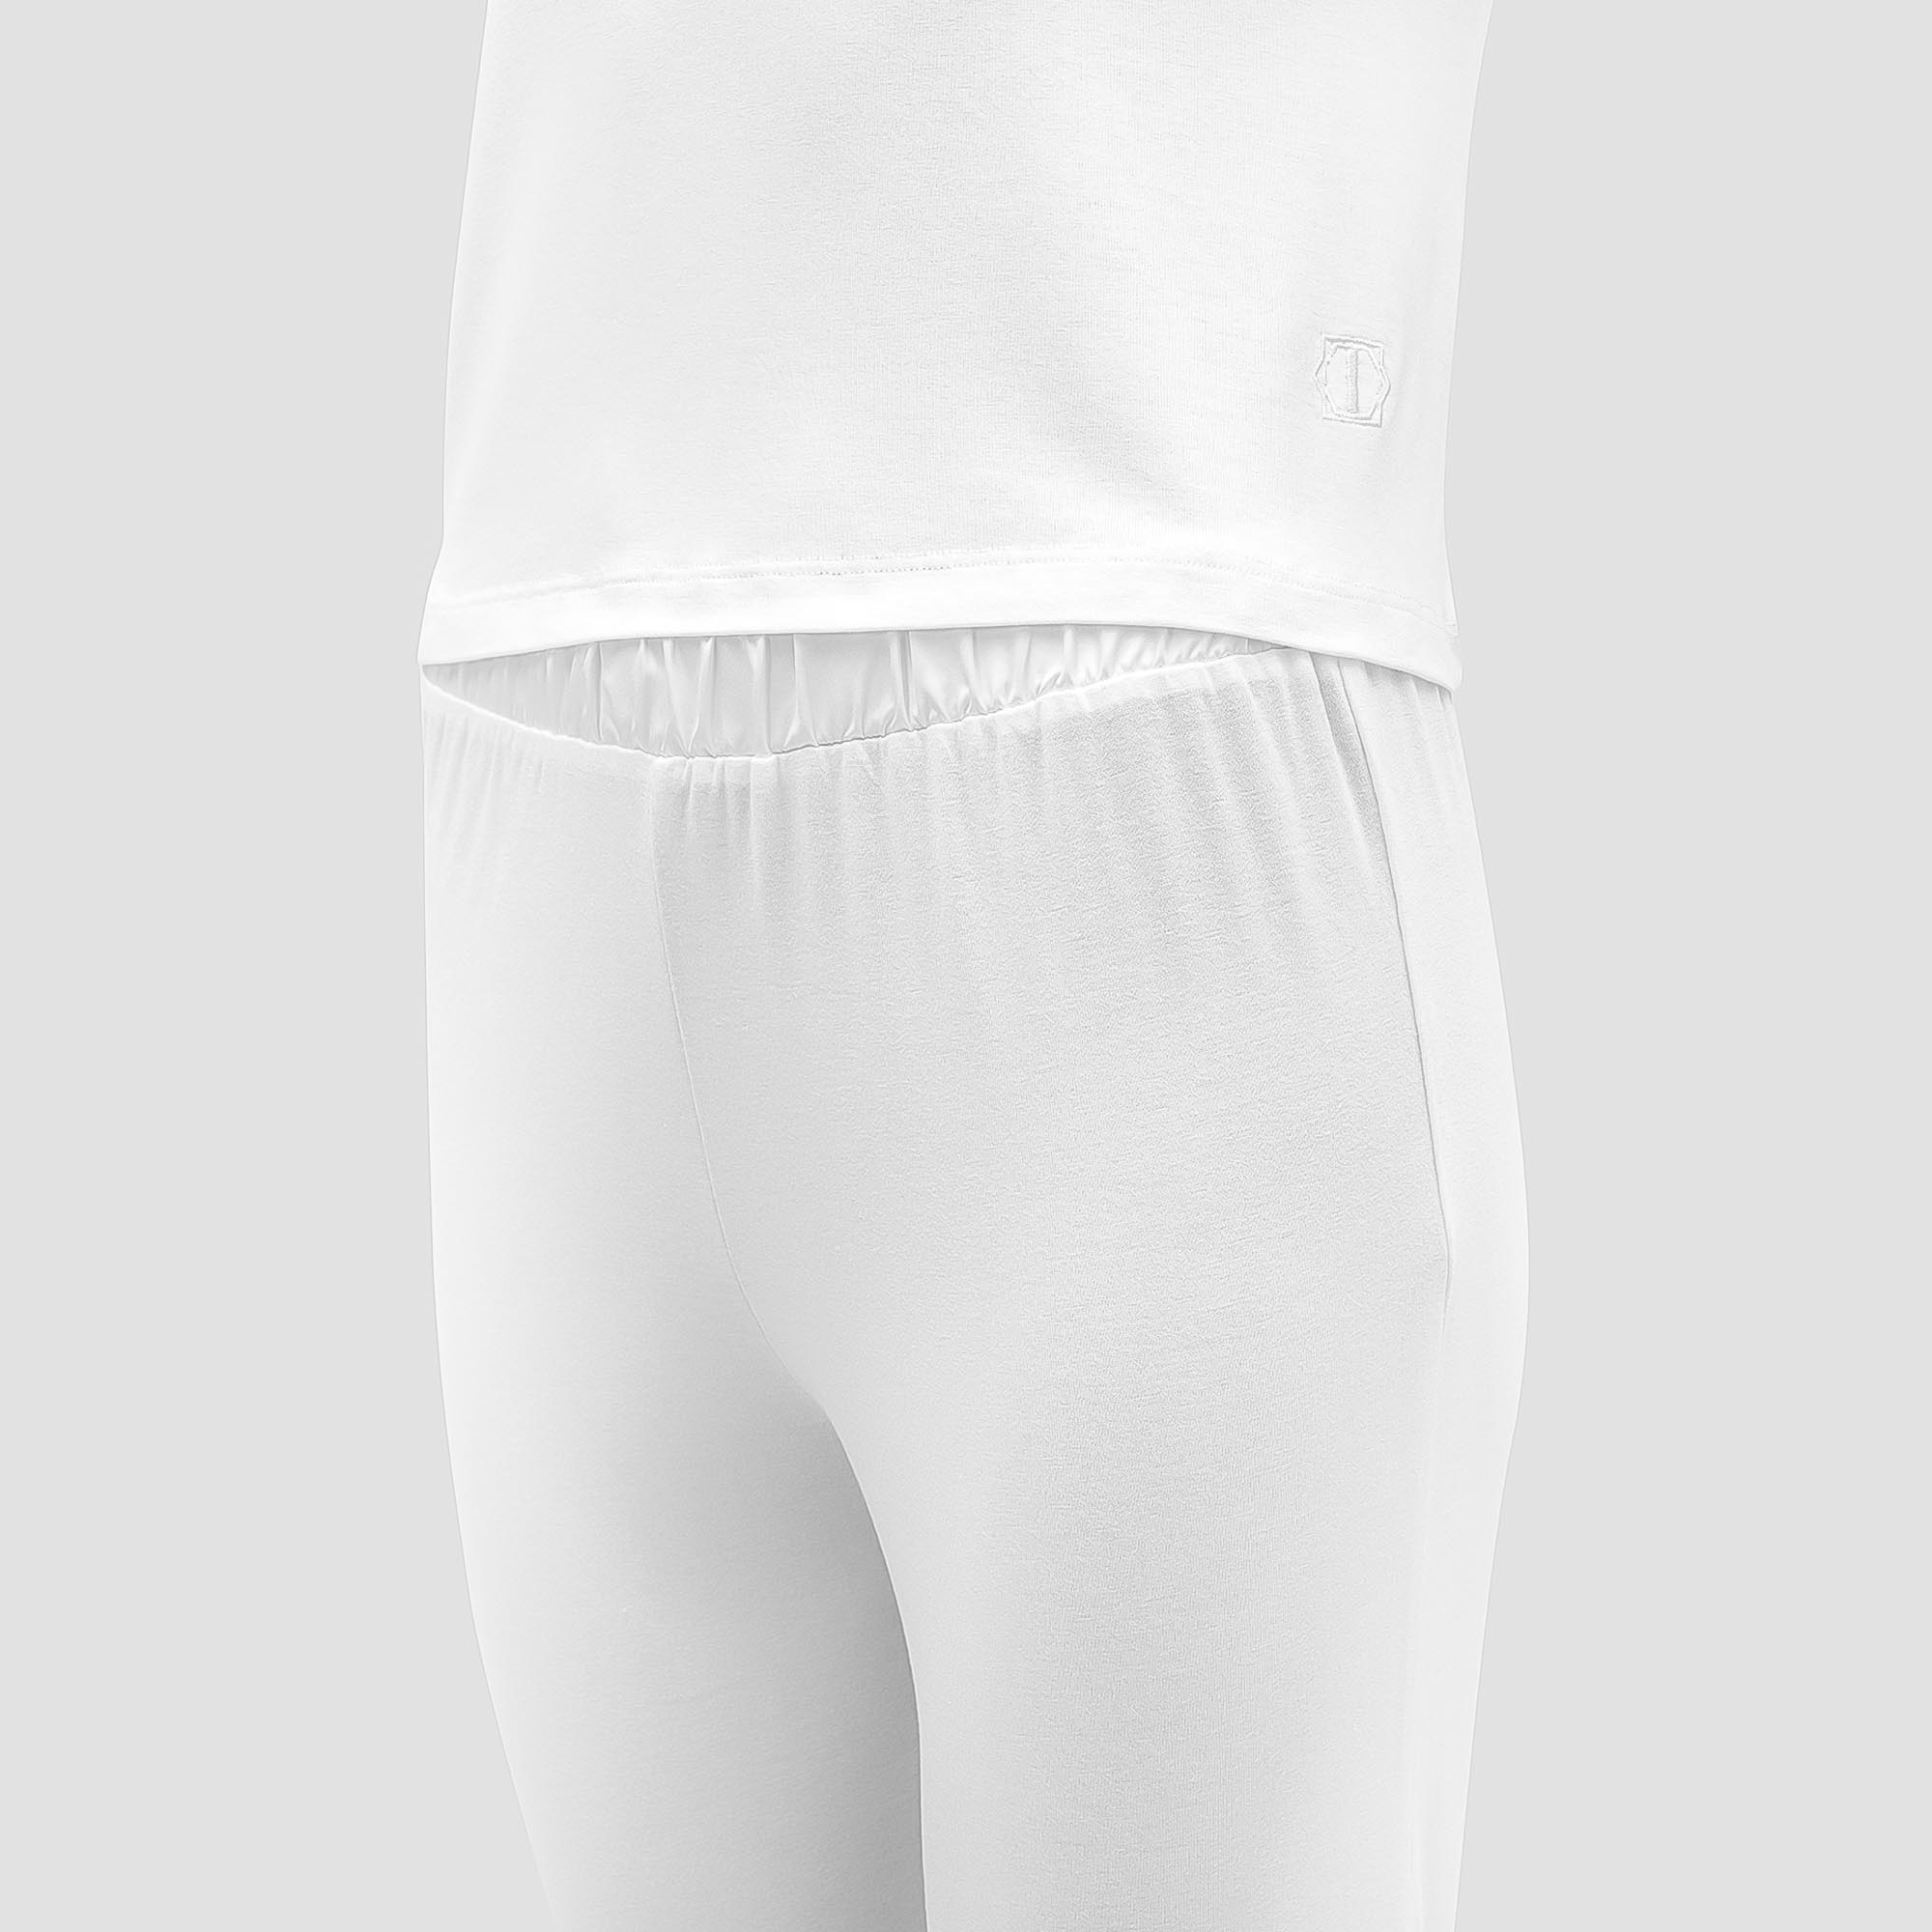 Пижама Togas Ингелла белая женская XL(50) 2 предмета, цвет белый, размер XL(50) - фото 2